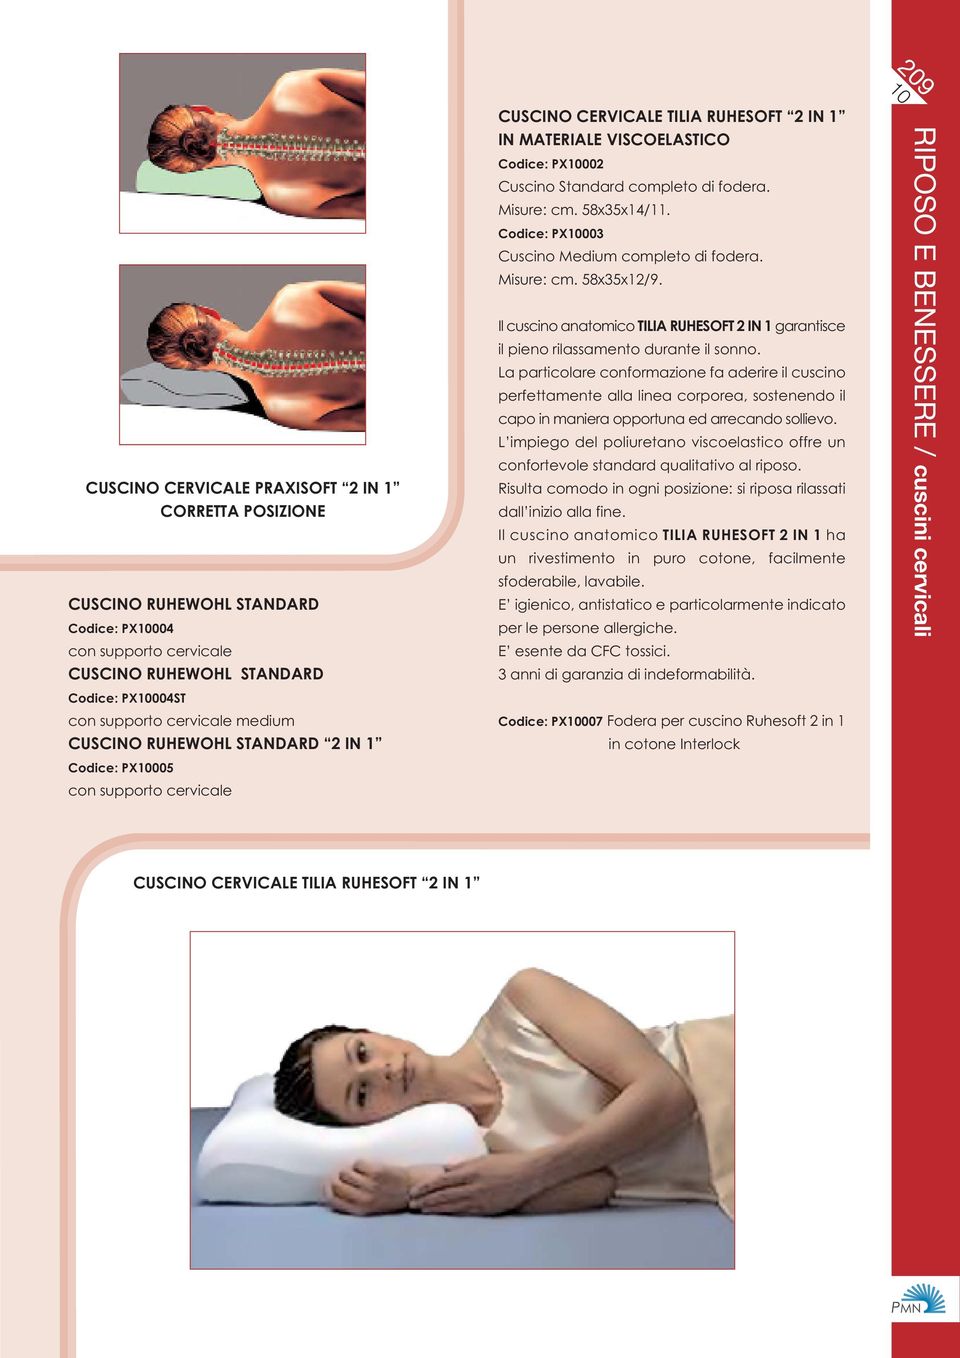 Codice: PX003 Cuscino Medium completo di fodera. Misure: cm. 58x35x12/9. Il cuscino anatomico TILIA RUHESOFT 2 IN 1 garantisce il pieno rilassamento durante il sonno.